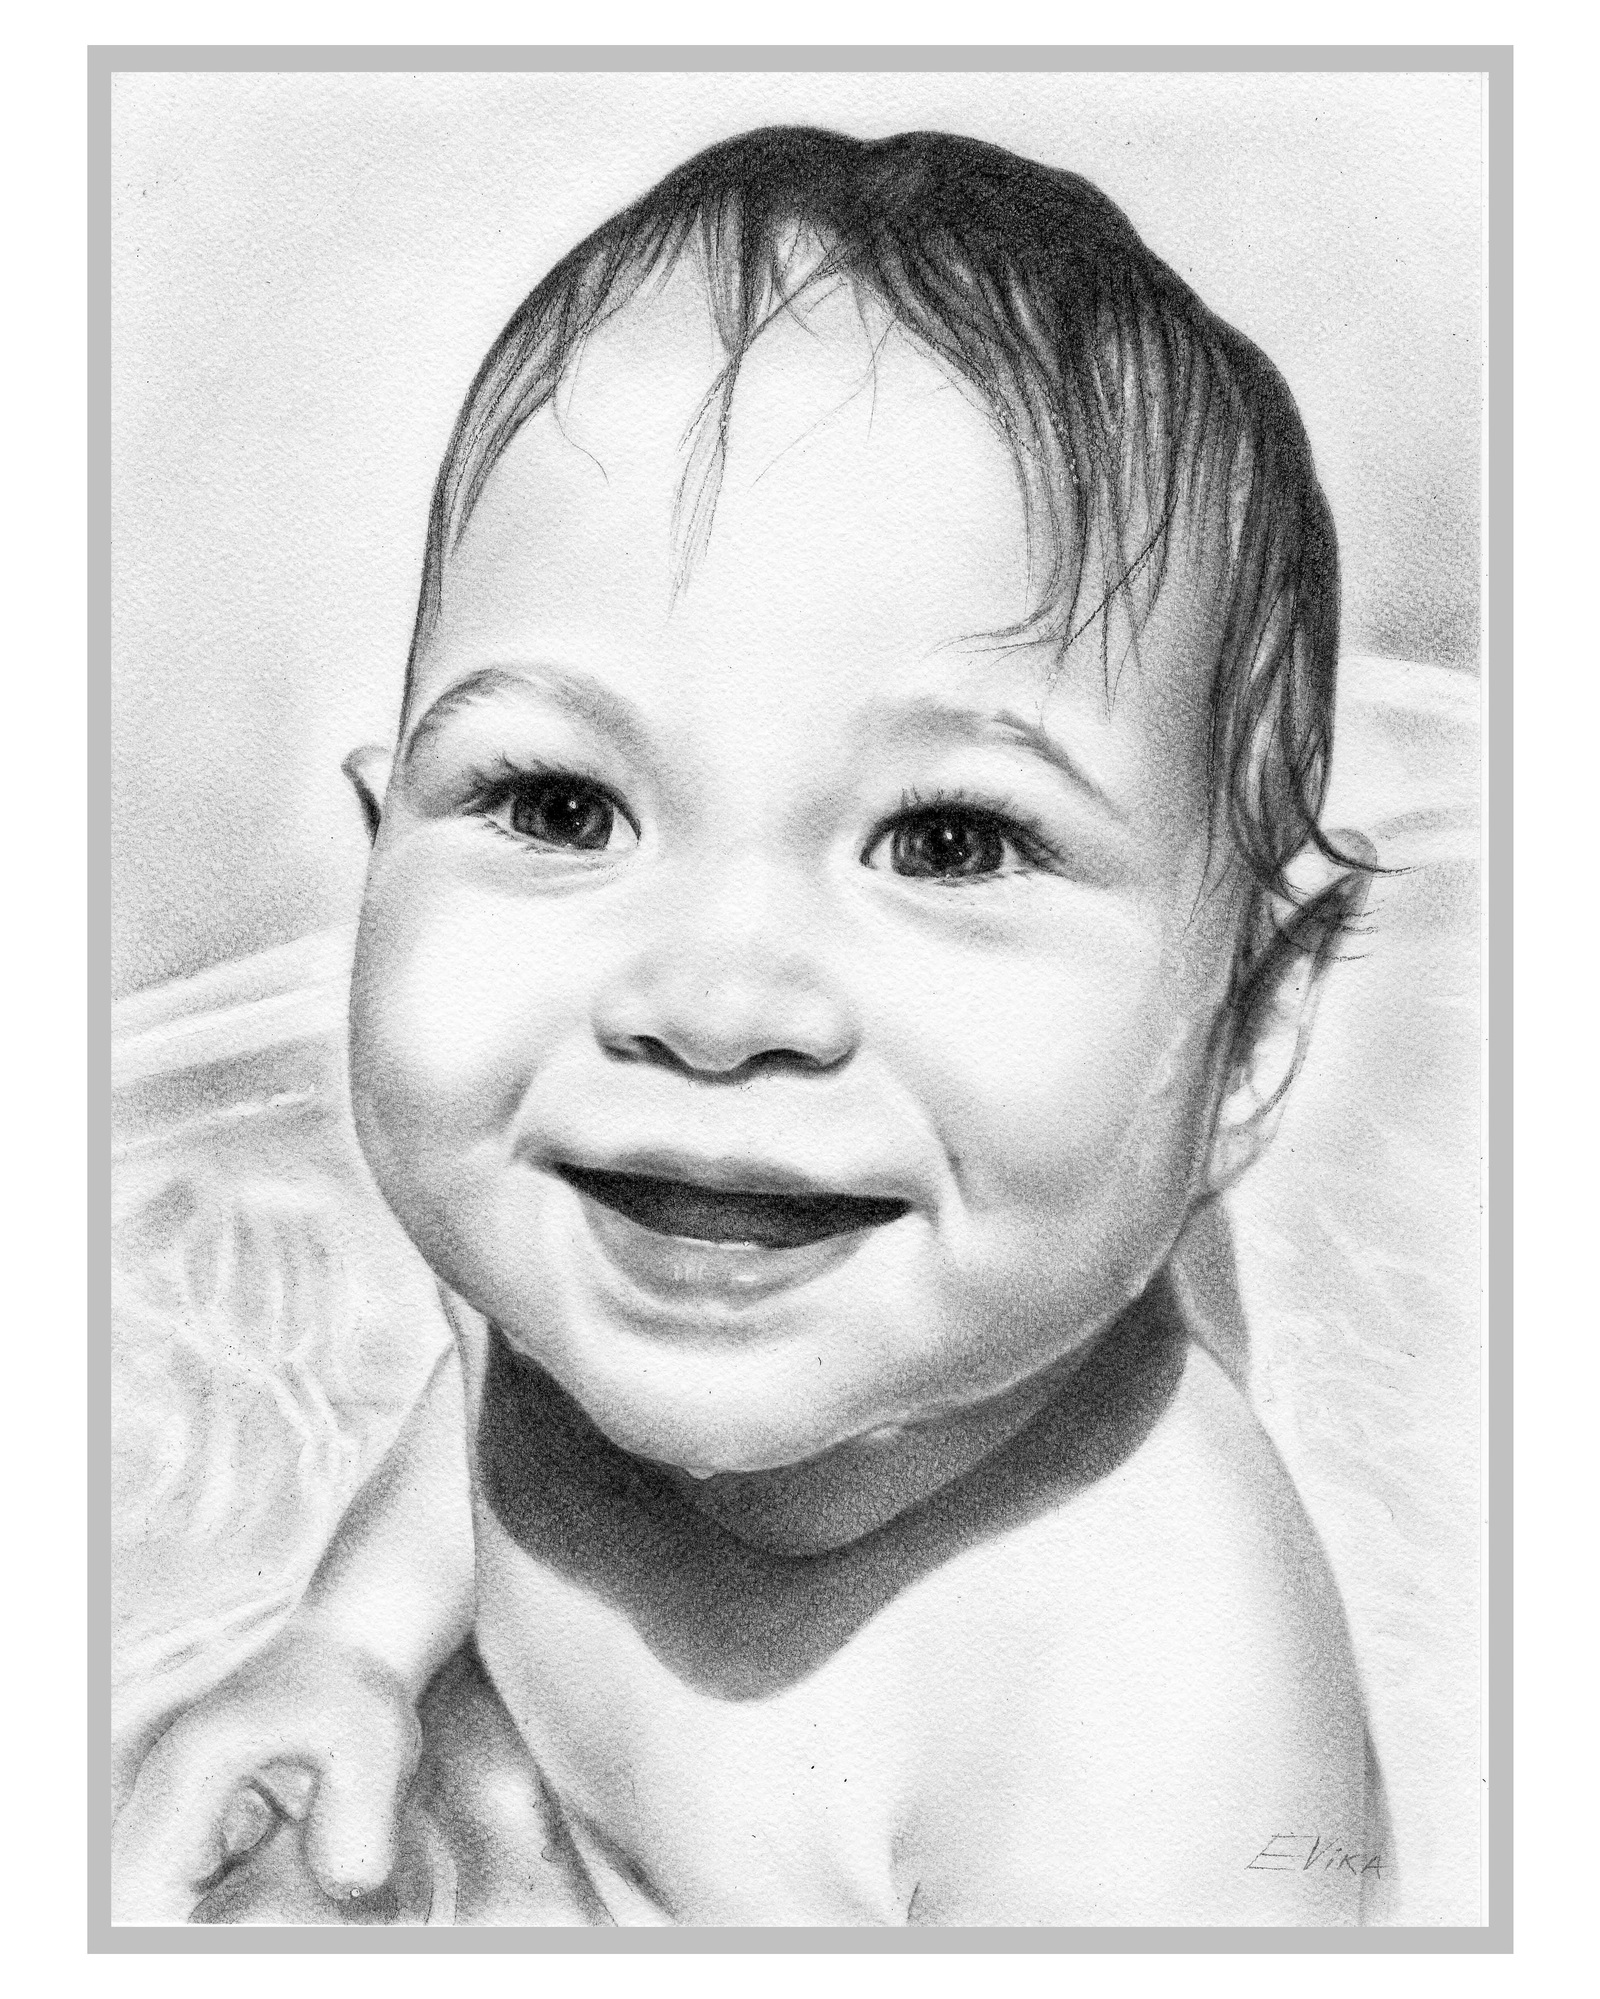 Ребенок карандашом. Рисунки сухой кистью. Рисунки для детей. Лицо младенца карандашом. Рисуем сухой кистью портрет ребёнка.